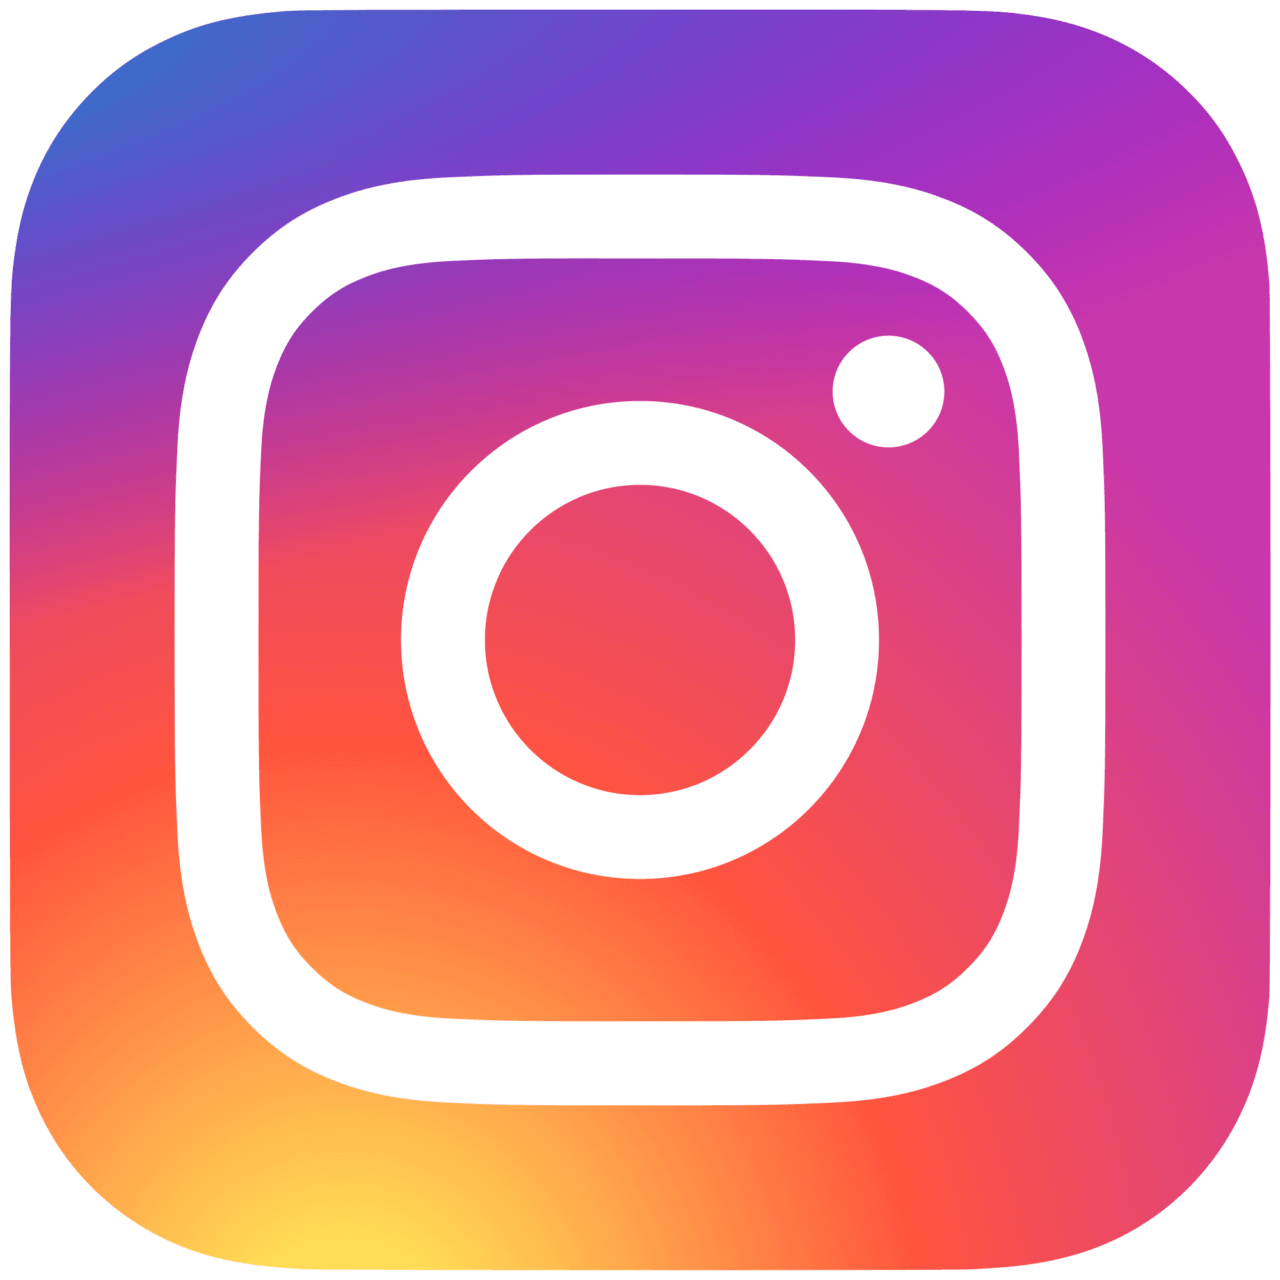 2000px-Instagram_logo_2016.svg_-1280x1280.png